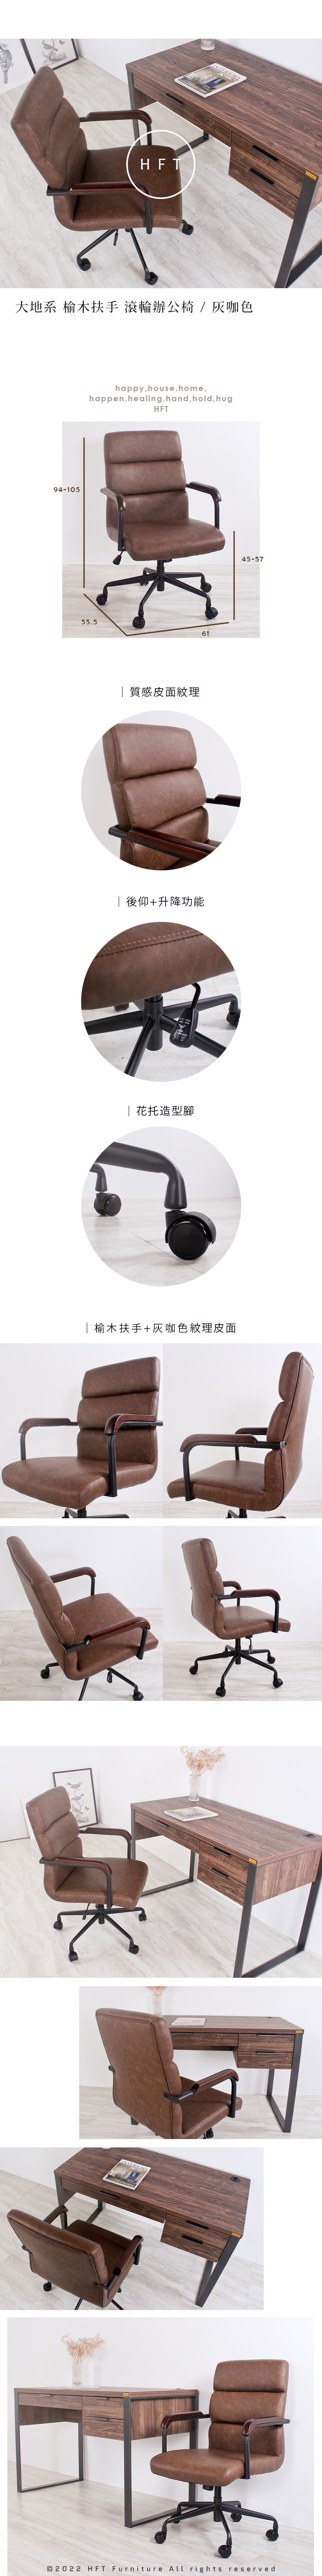 hft-0080-wood-arm-office-chair.jpg